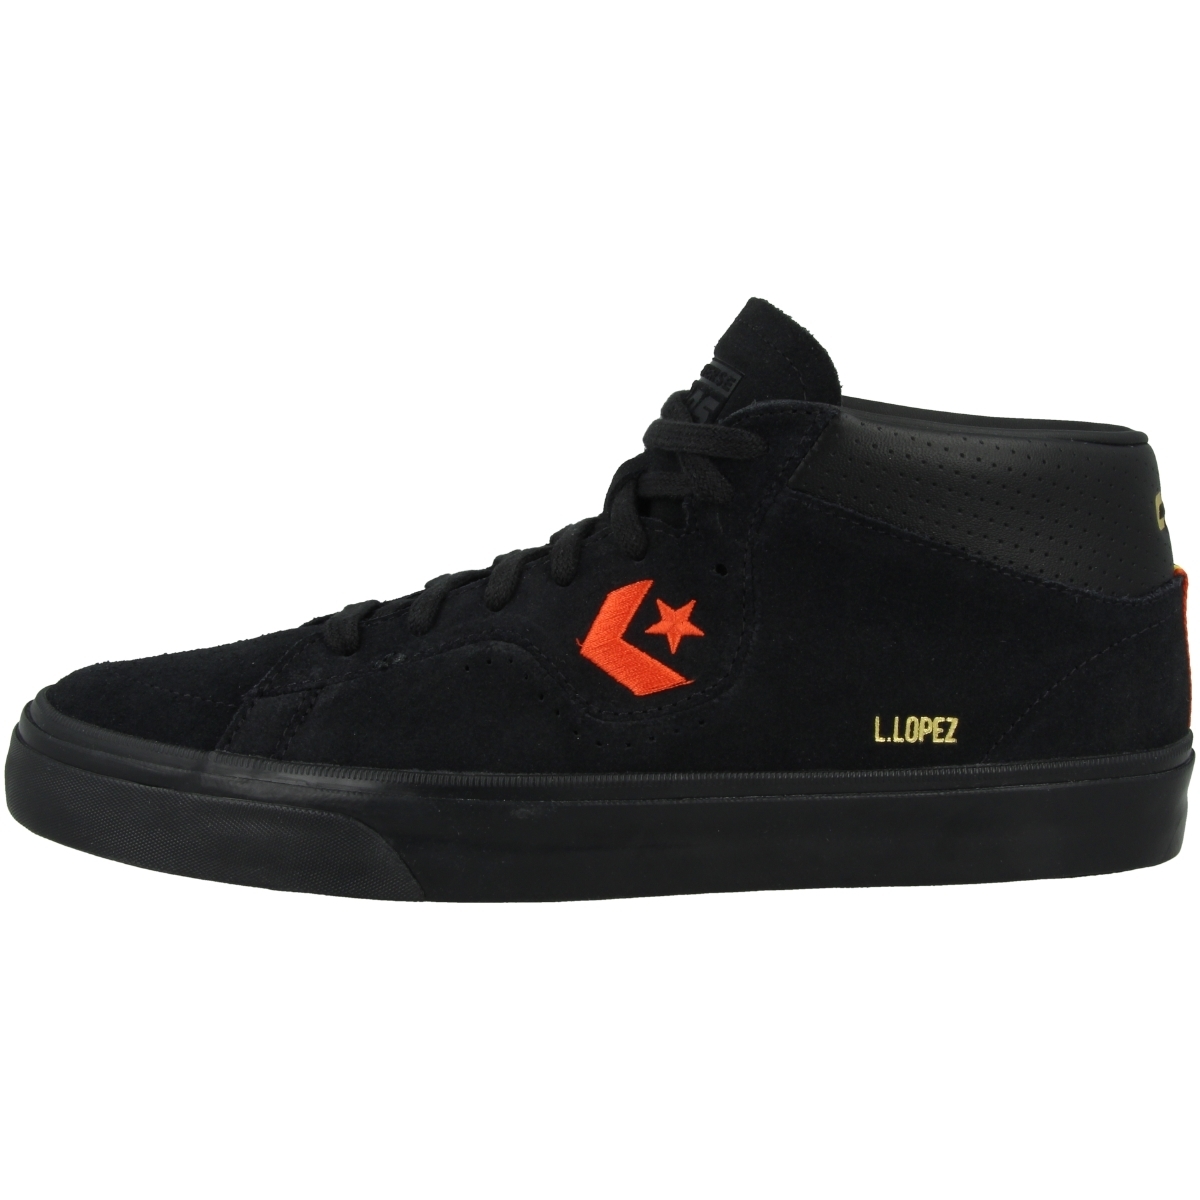 Converse Cons Louie Lopez Pro Sneaker mid